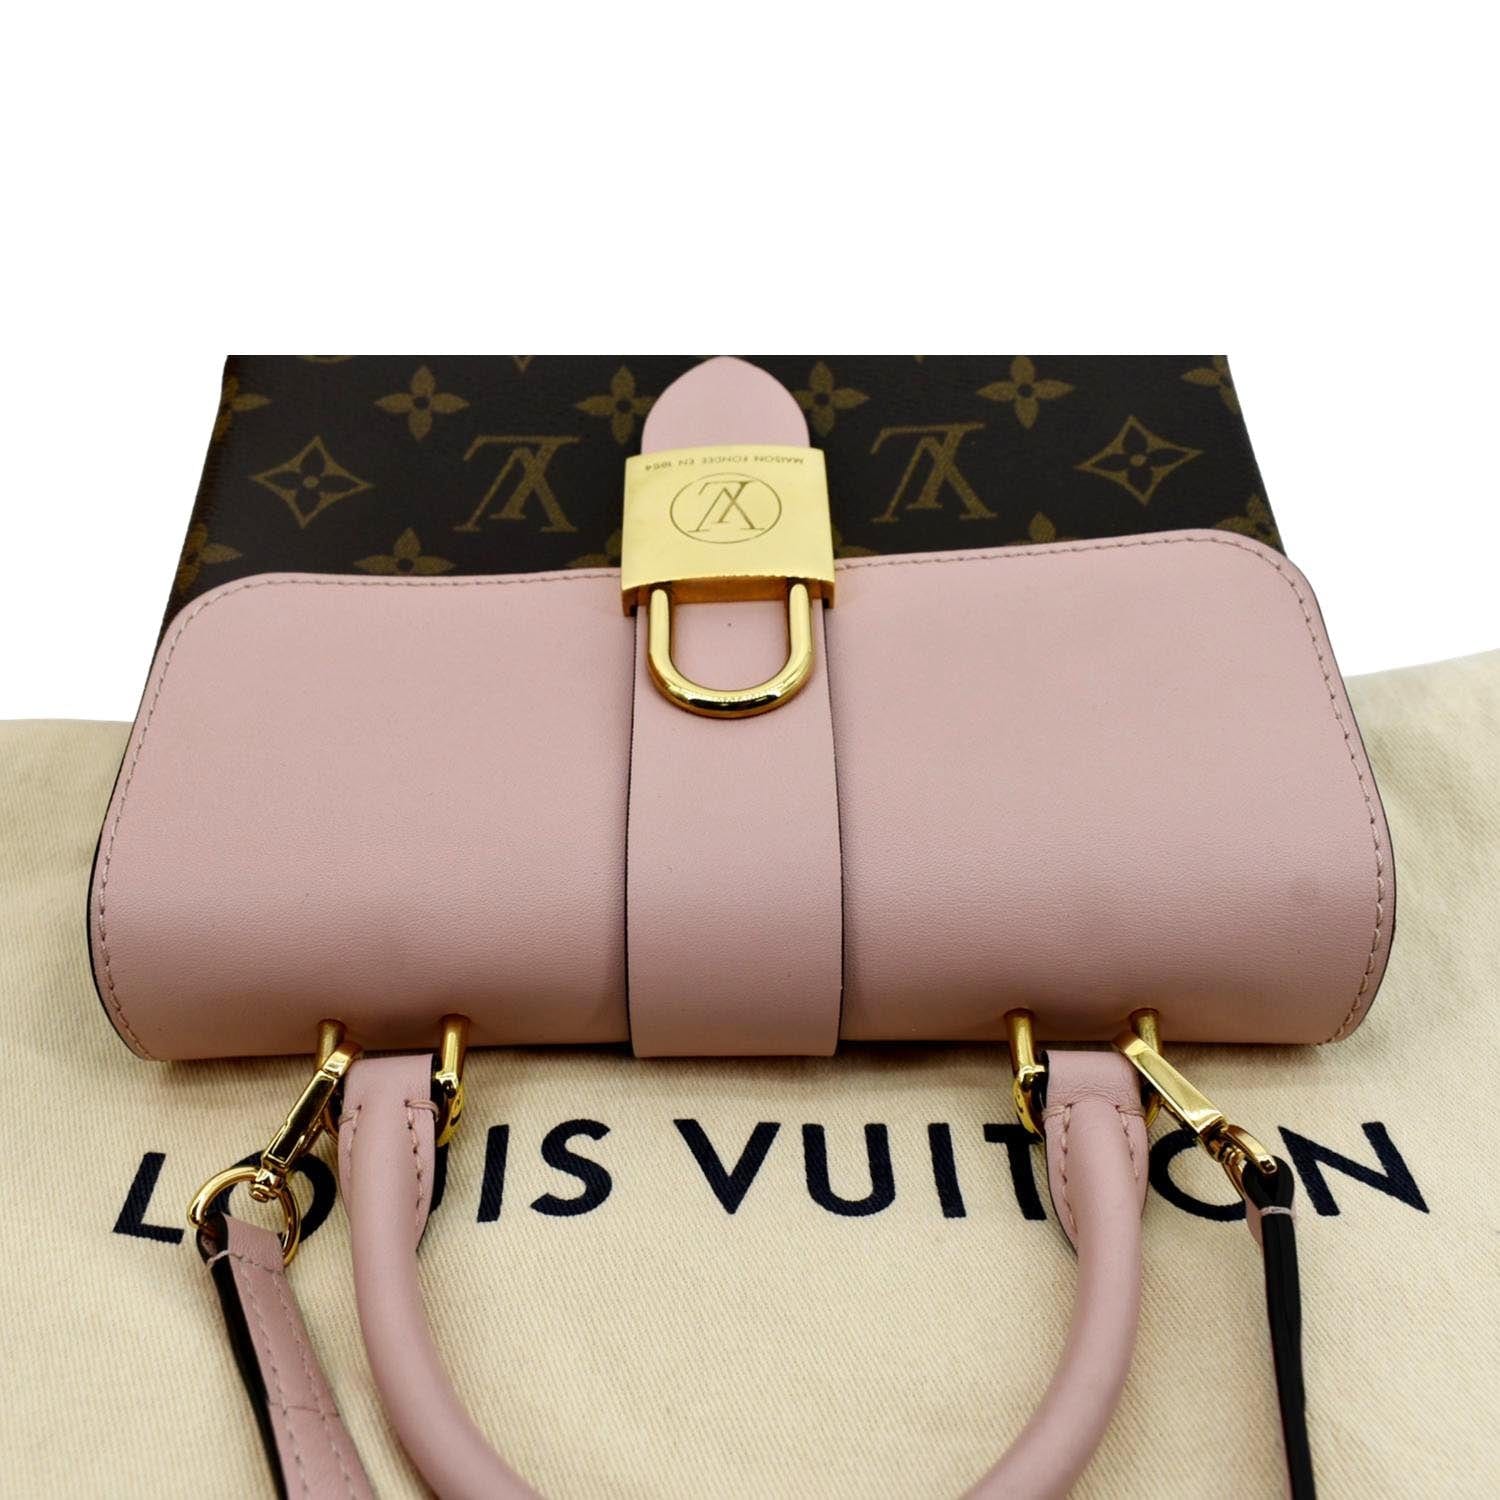 Louis Vuitton Eva Clutch  Unboxing & Review 